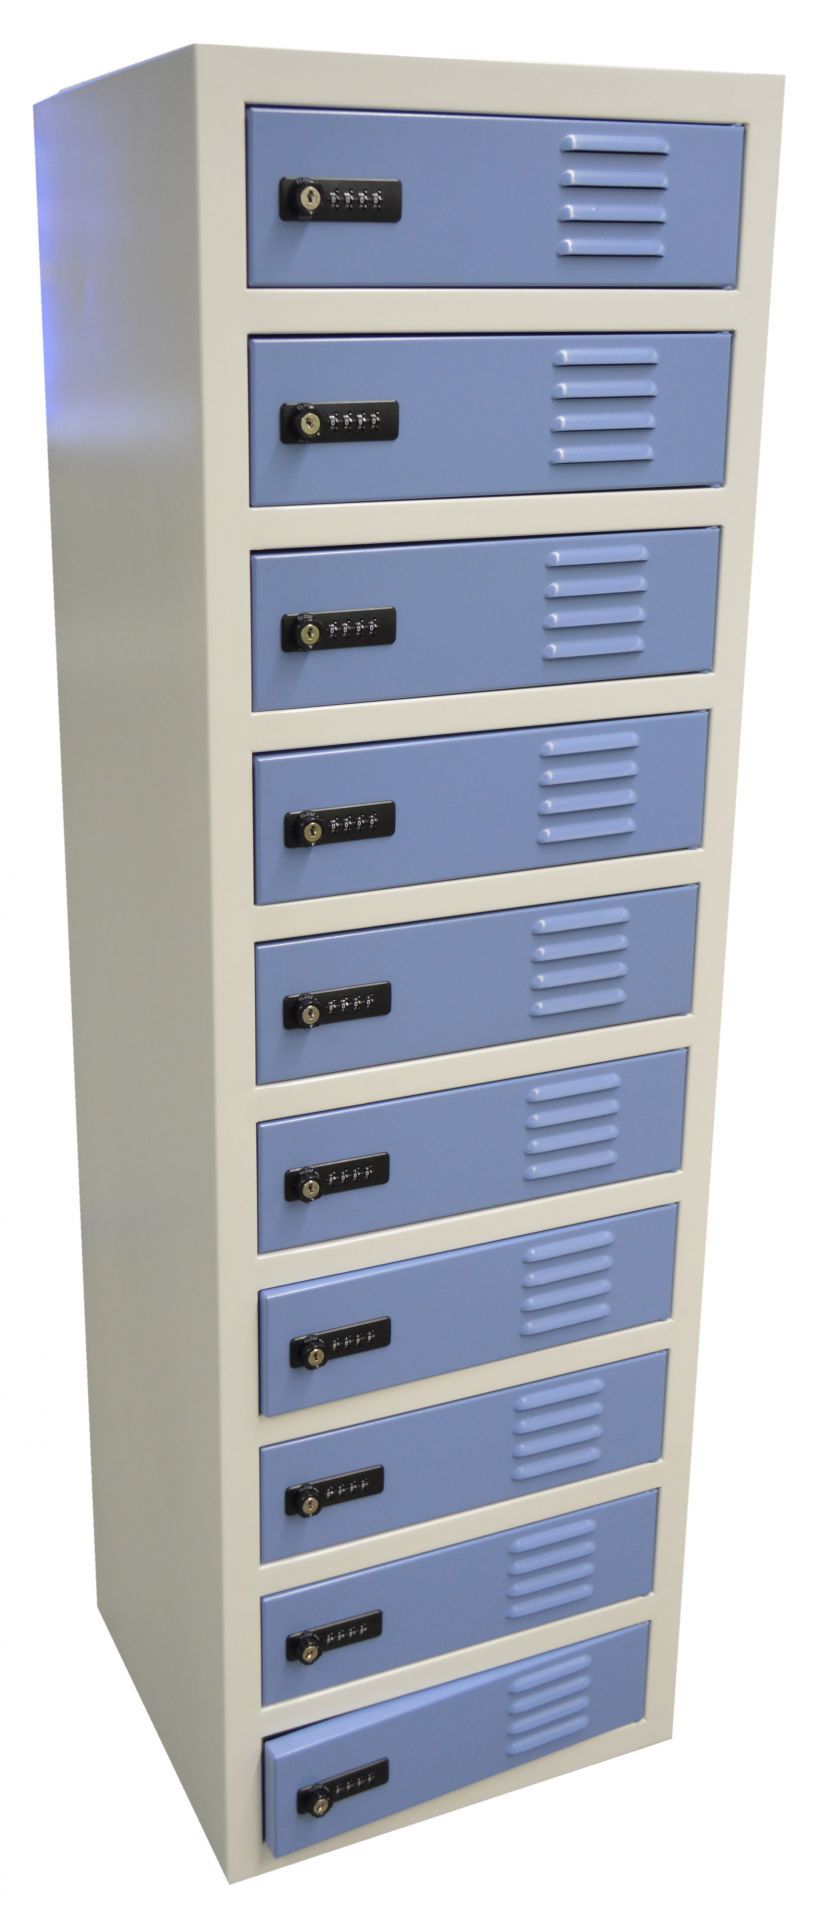 Station de stockage casiers individuels - aralocker 10 - armoire de rechargement - dimensions h*l*p : 1300 * 400 * 450_0